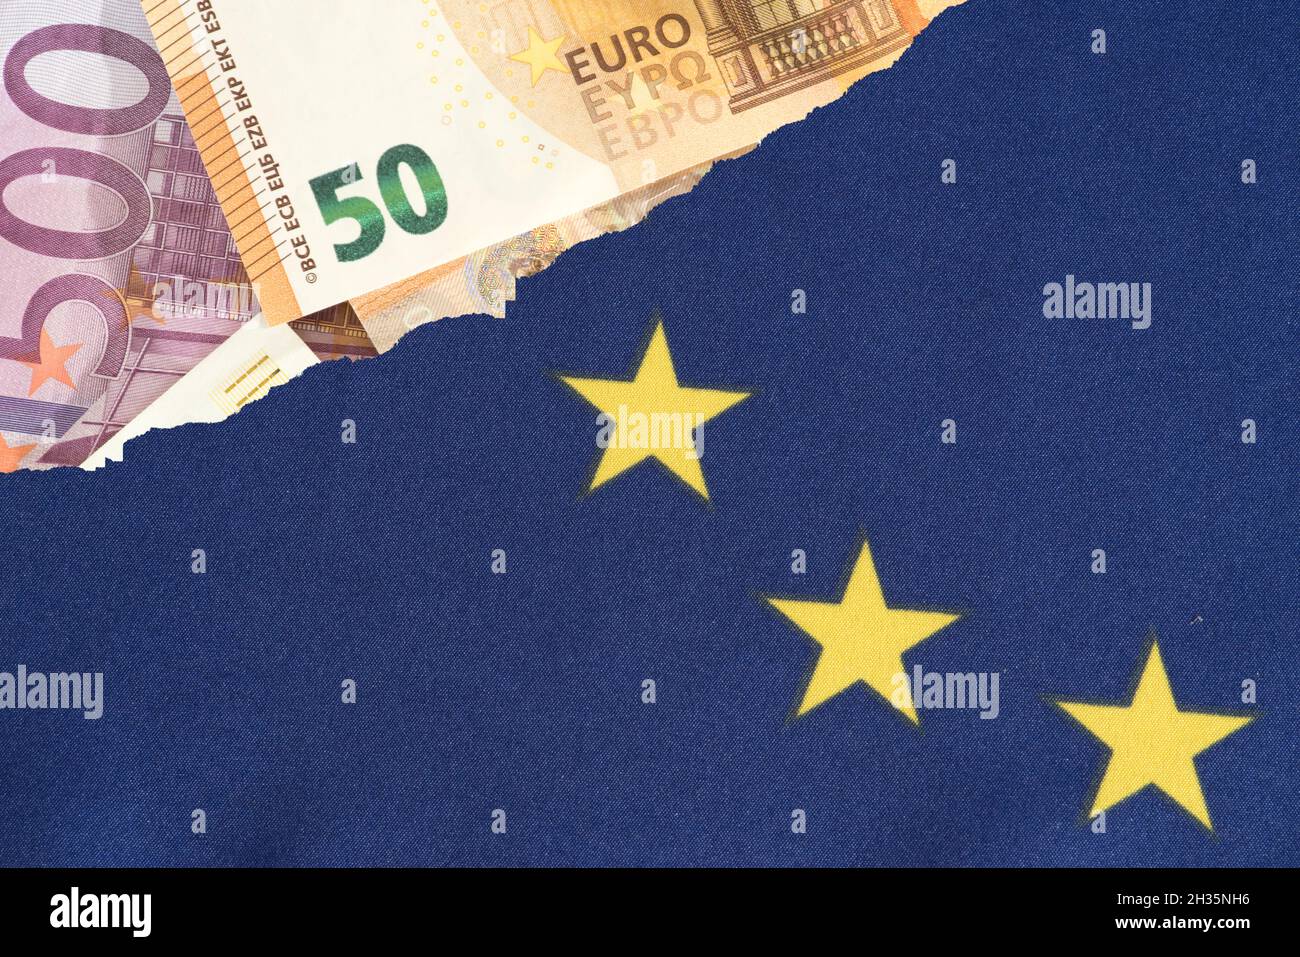 European Union flag and Euro banknotes Stock Photo